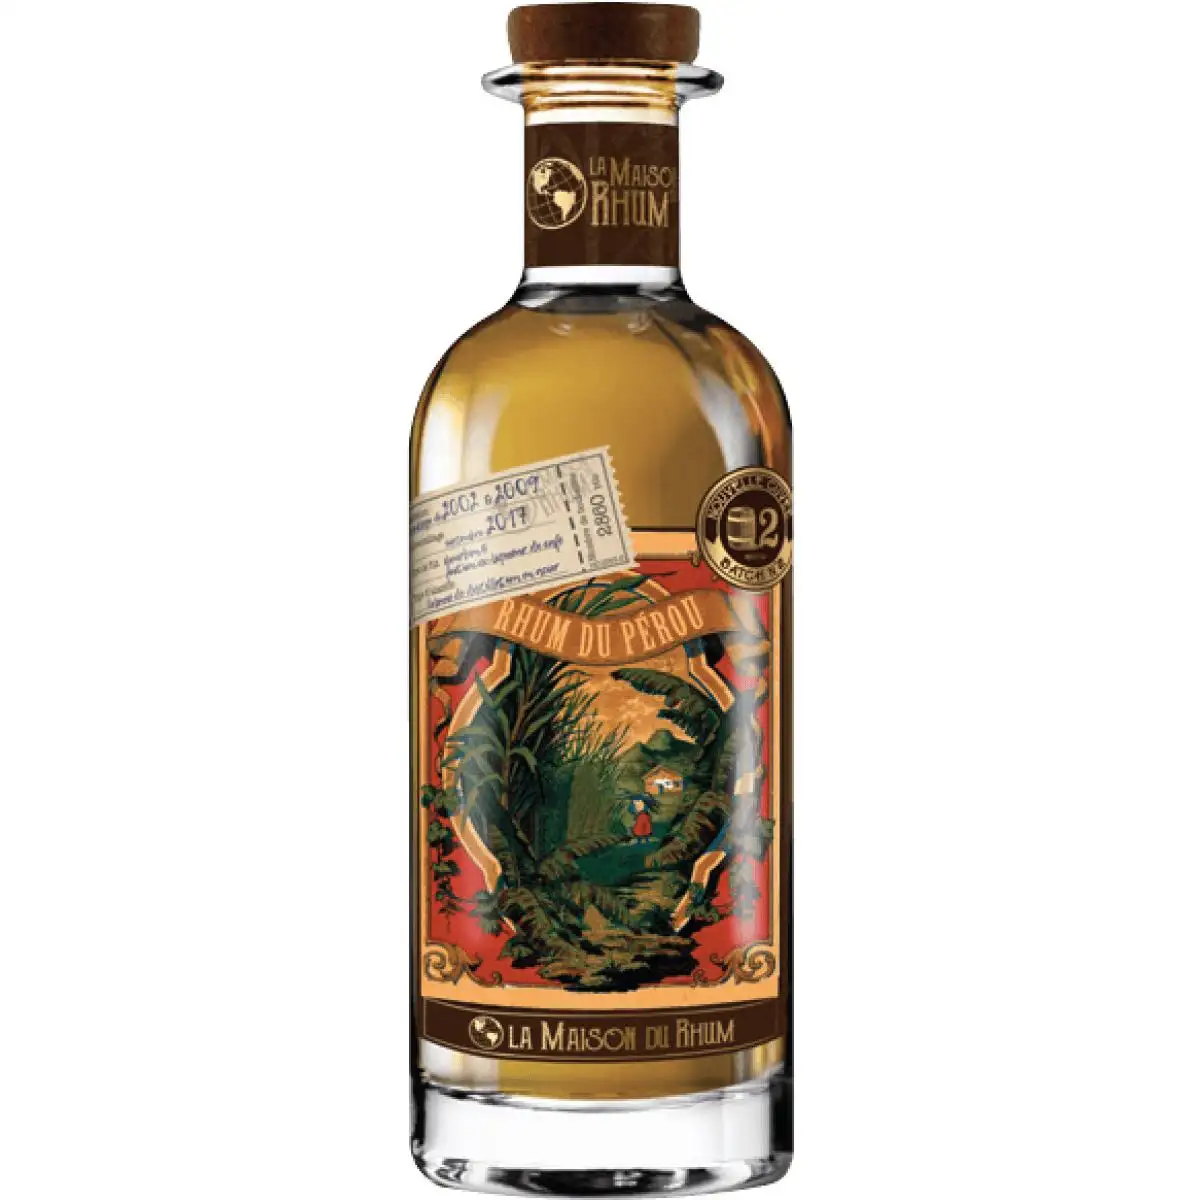 Image of the front of the bottle of the rum La Maison du Rhum Pérou Millonario #2